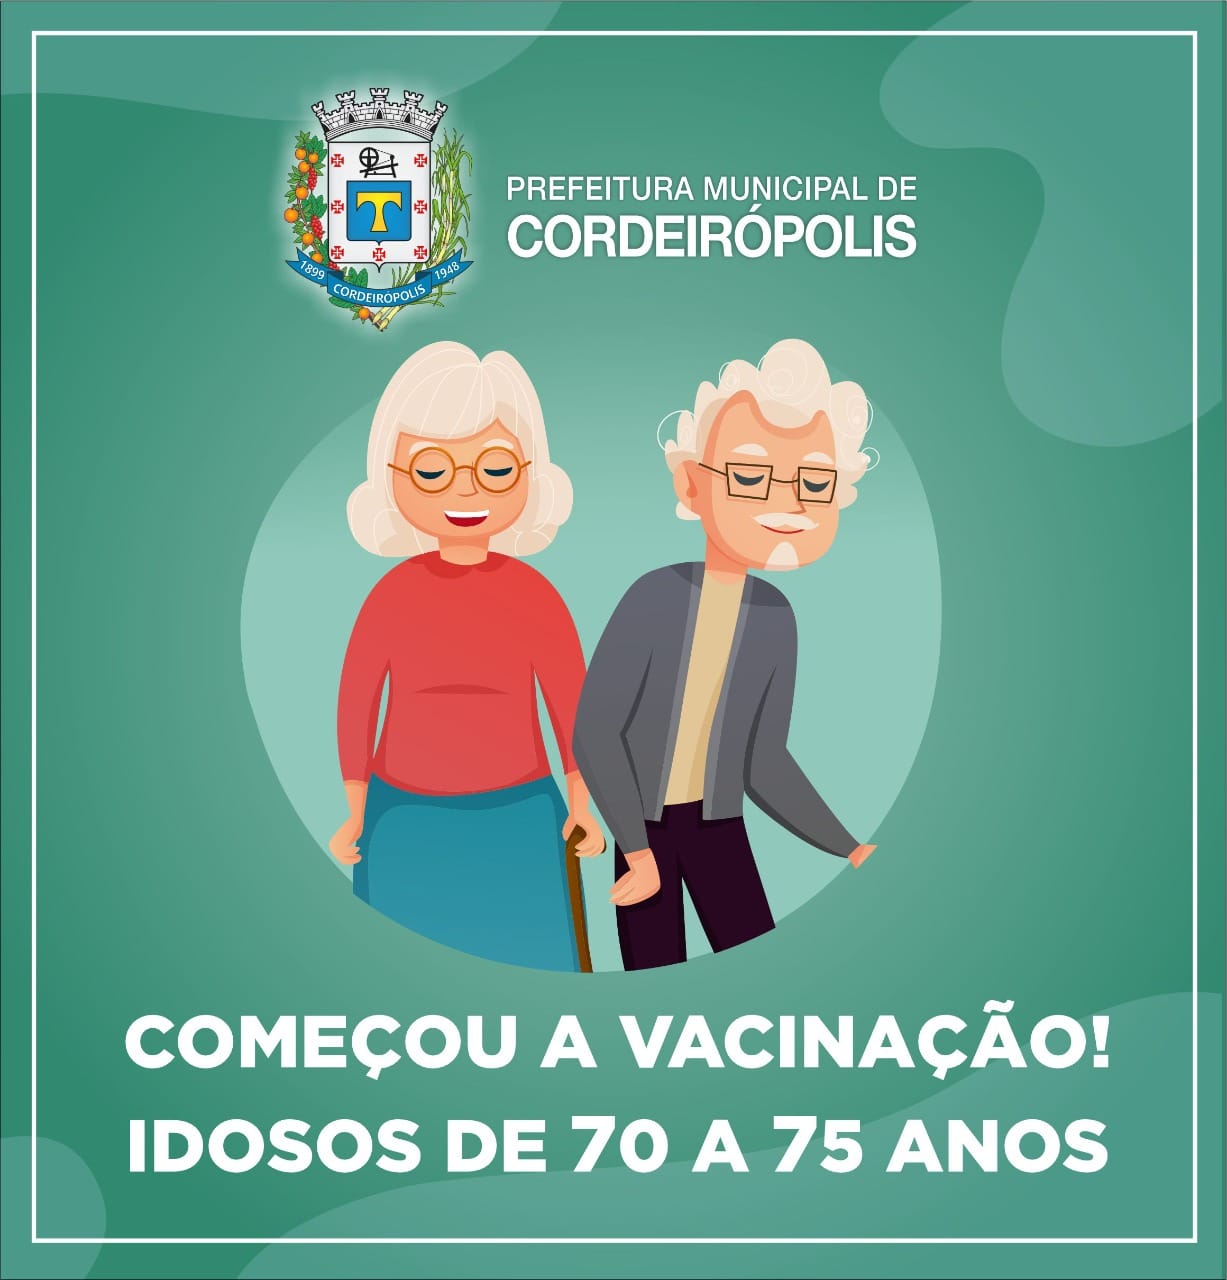 Cordeirópolis vacina mais de mil idosos contra Covid-19